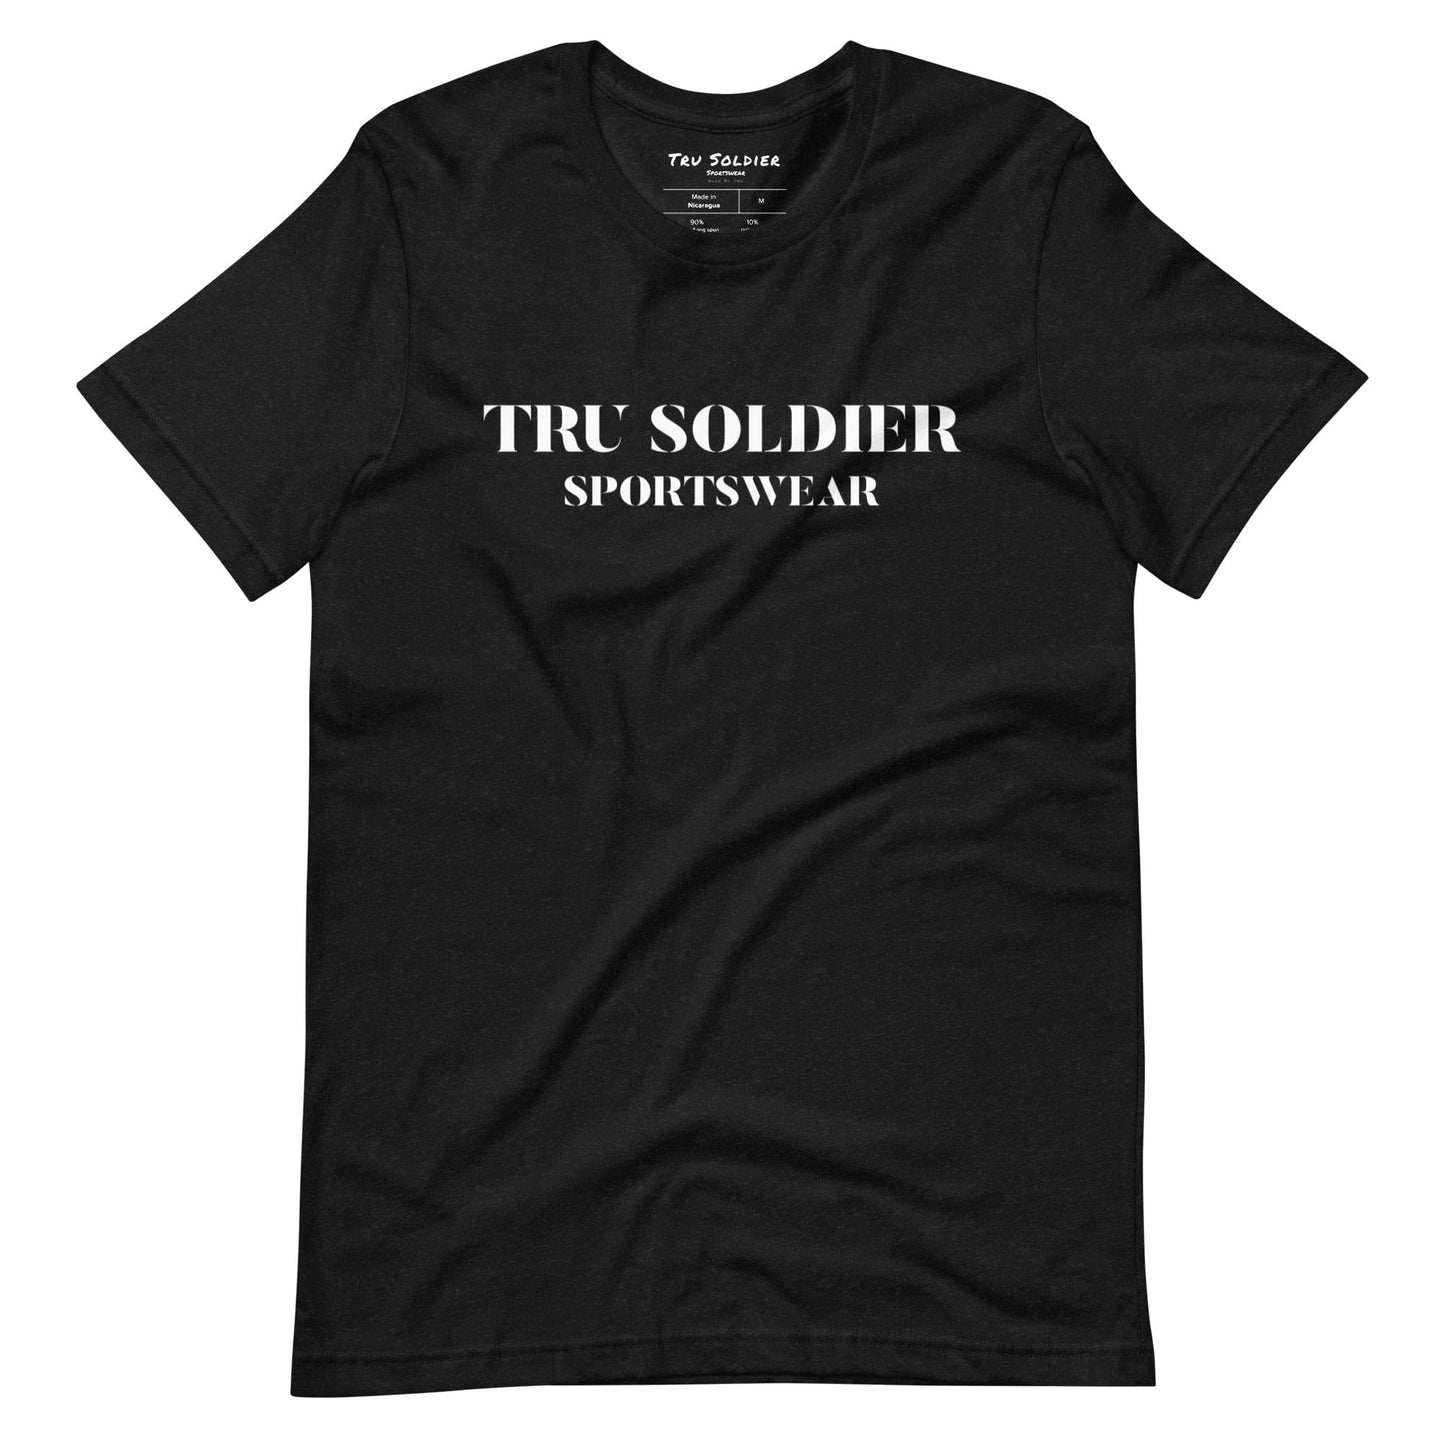 Tru Soldier Sportswear  Black Heather / XS Tru Soldier Sportswear t-shirt